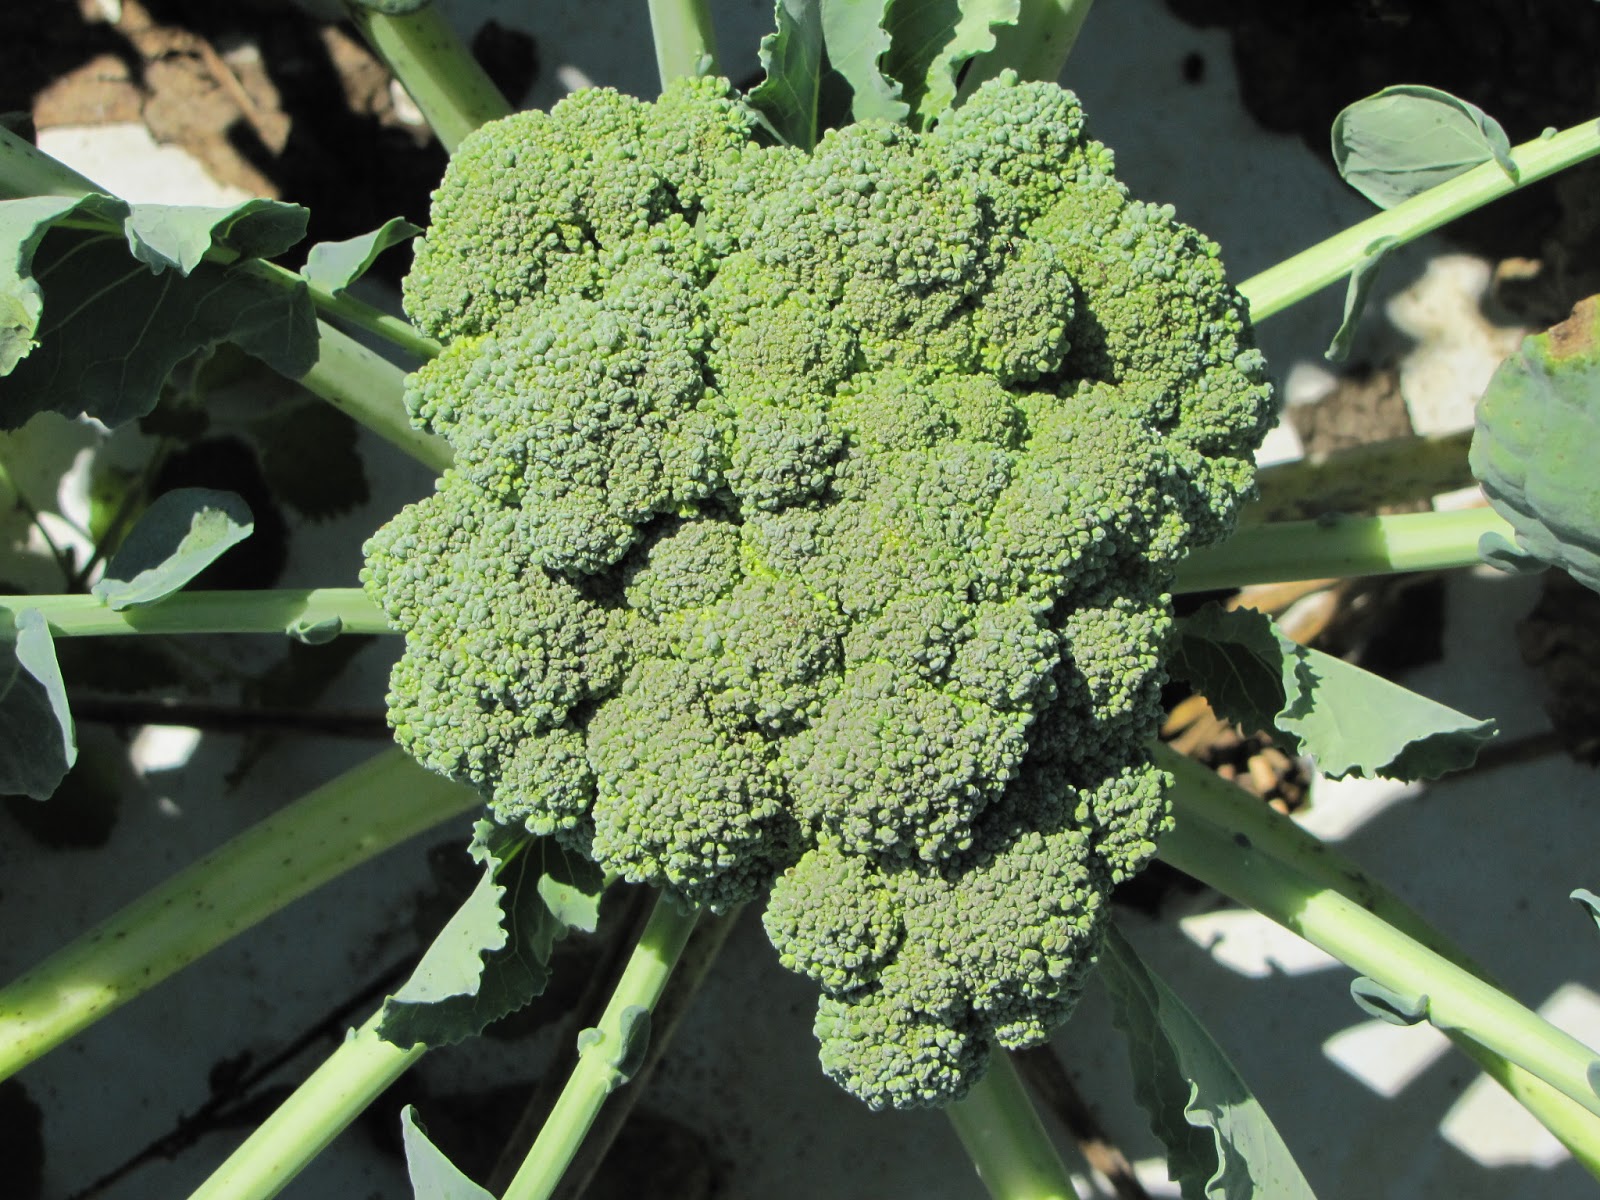 Premium Crop broccoli grown in 2012